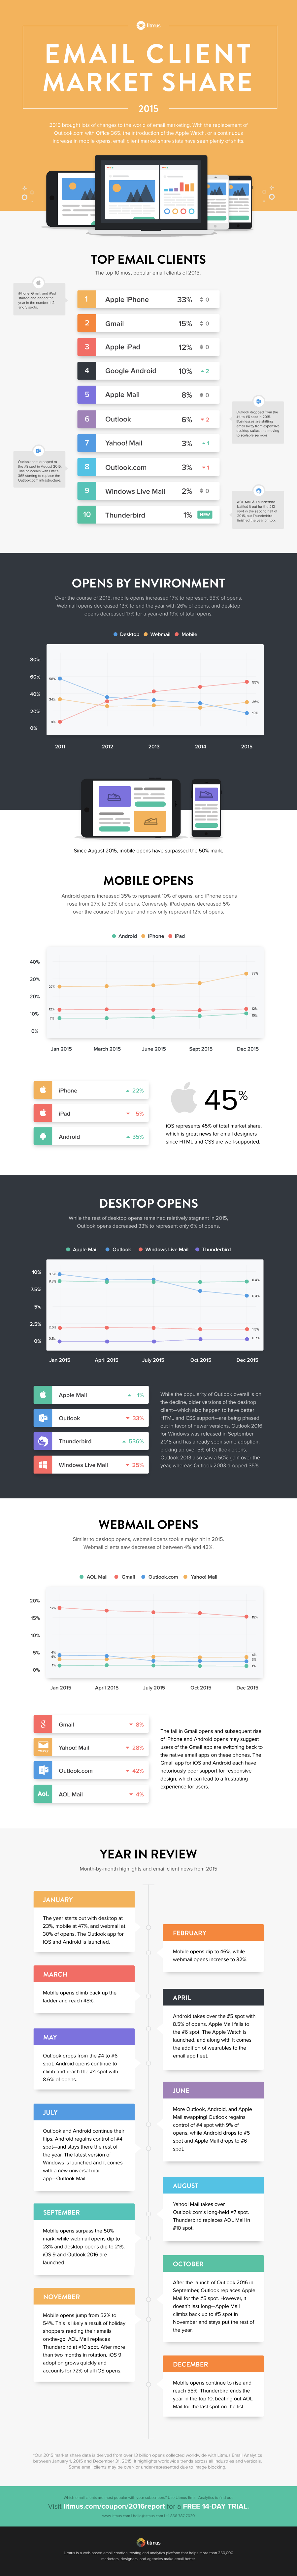 Infografik: Marktanteile E-Mail-Clients von litmus.com